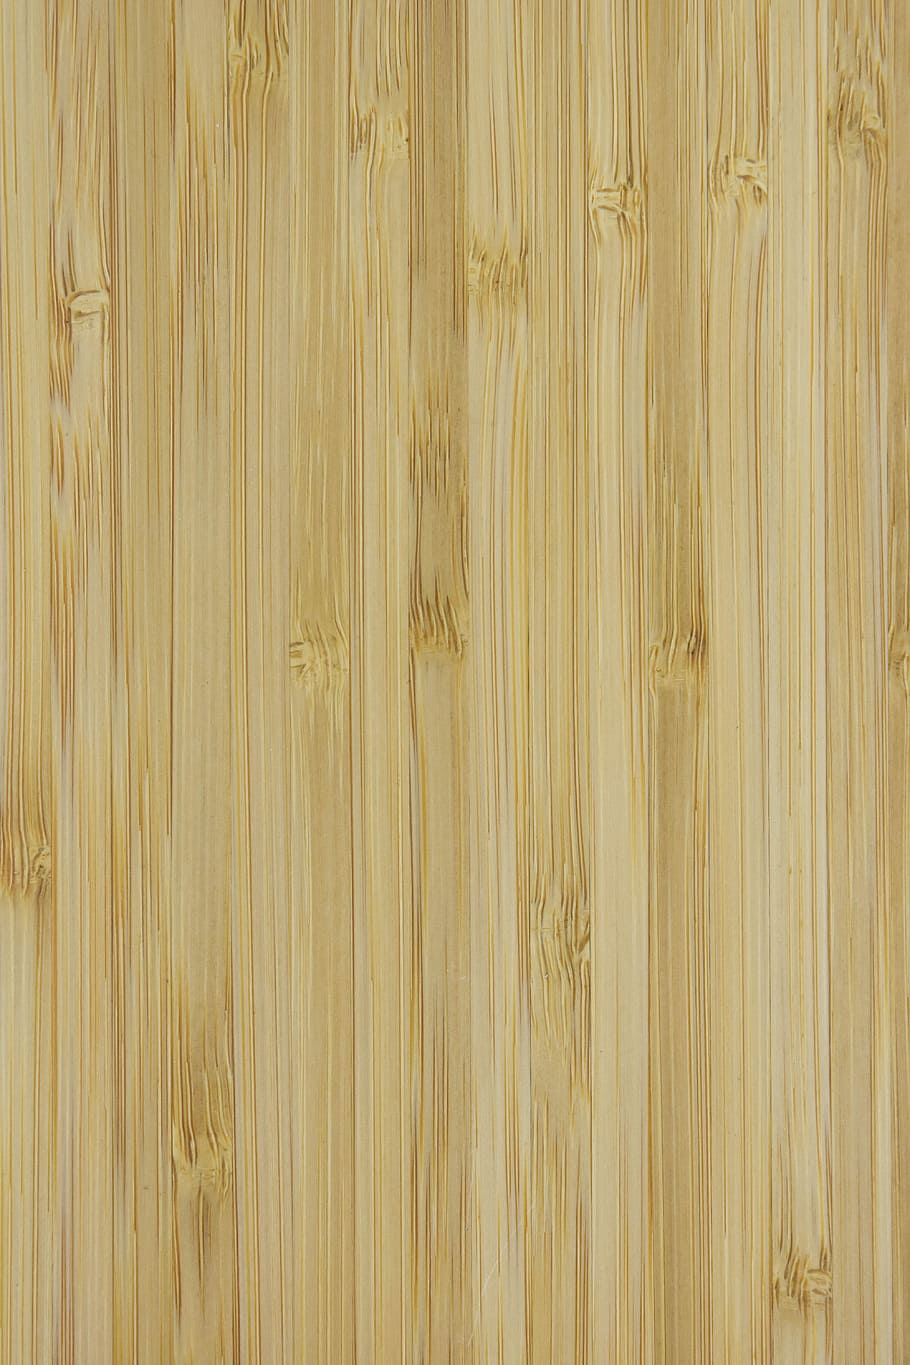 HD wallpaper với họa tiết gỗ sần sật sẽ mang đến cho bạn cảm giác yên bình và gần gũi với thiên nhiên ngay trên màn hình điện thoại hay máy tính của mình. Hãy chiêm ngưỡng và tận hưởng vẻ đẹp đến từ chi tiết nhỏ nhất của họa tiết gỗ này.